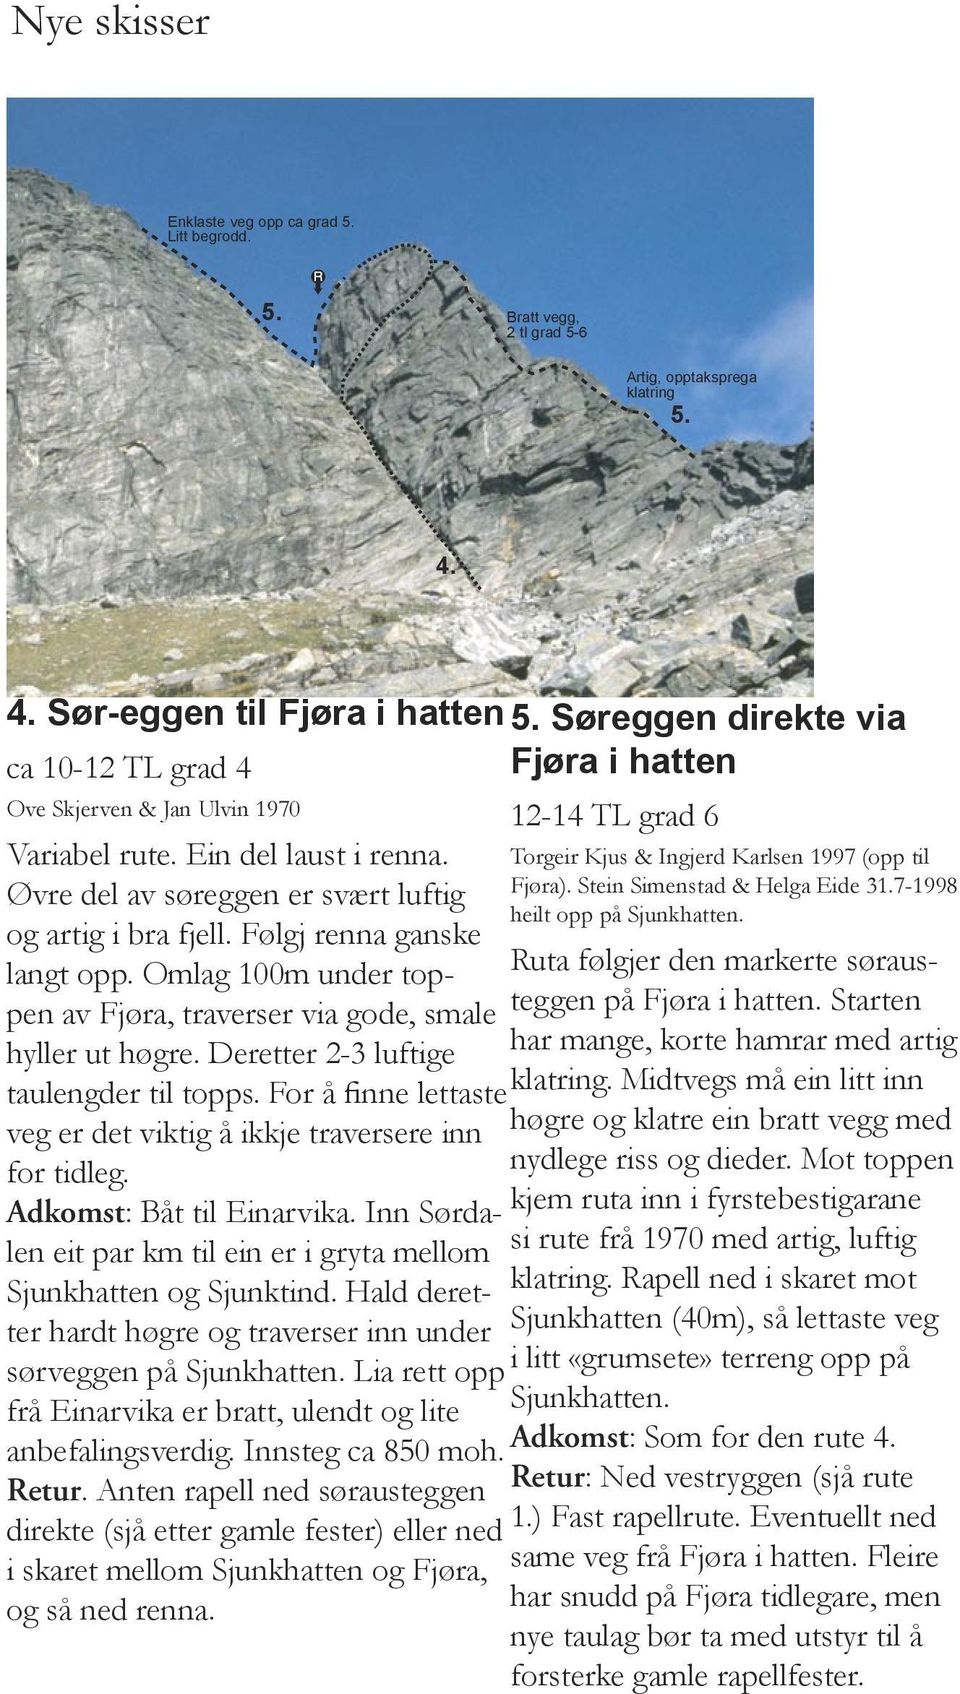 Torgeir Kjus & Ingjerd Karlsen 1997 (opp til Øvre del av søreggen er svært luftig Fjøra). Stein Simenstad & Helga Eide 31.7-1998 heilt opp på Sjunkhatten. og artig i bra fjell.